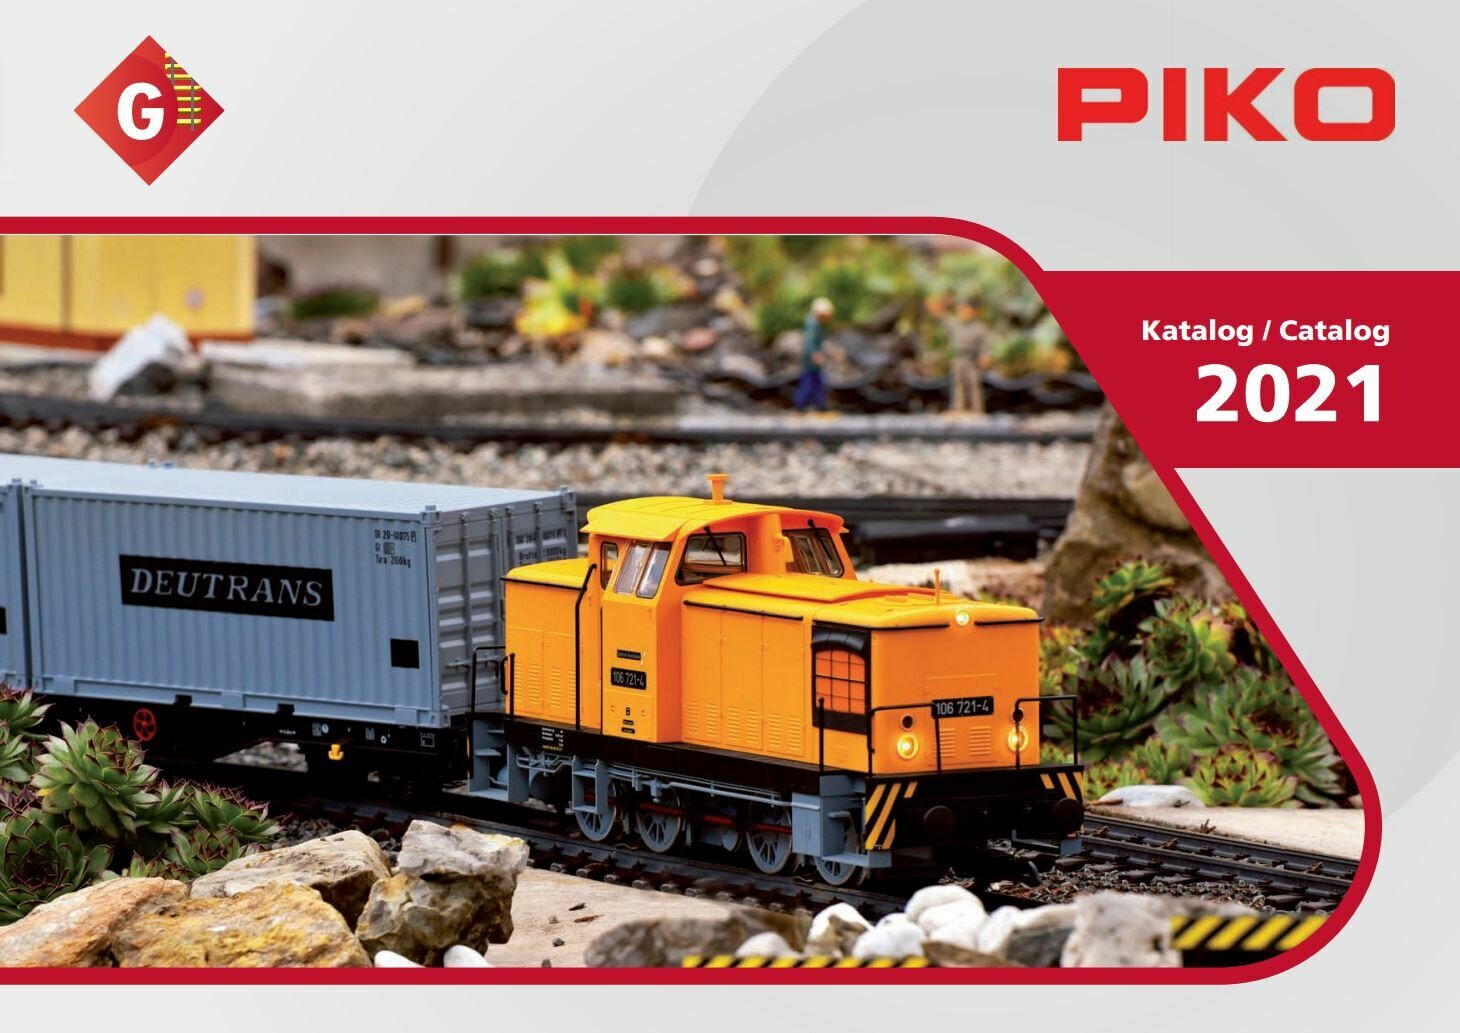 99721 Piko G 2021 catálogo - Alemán/Inglés